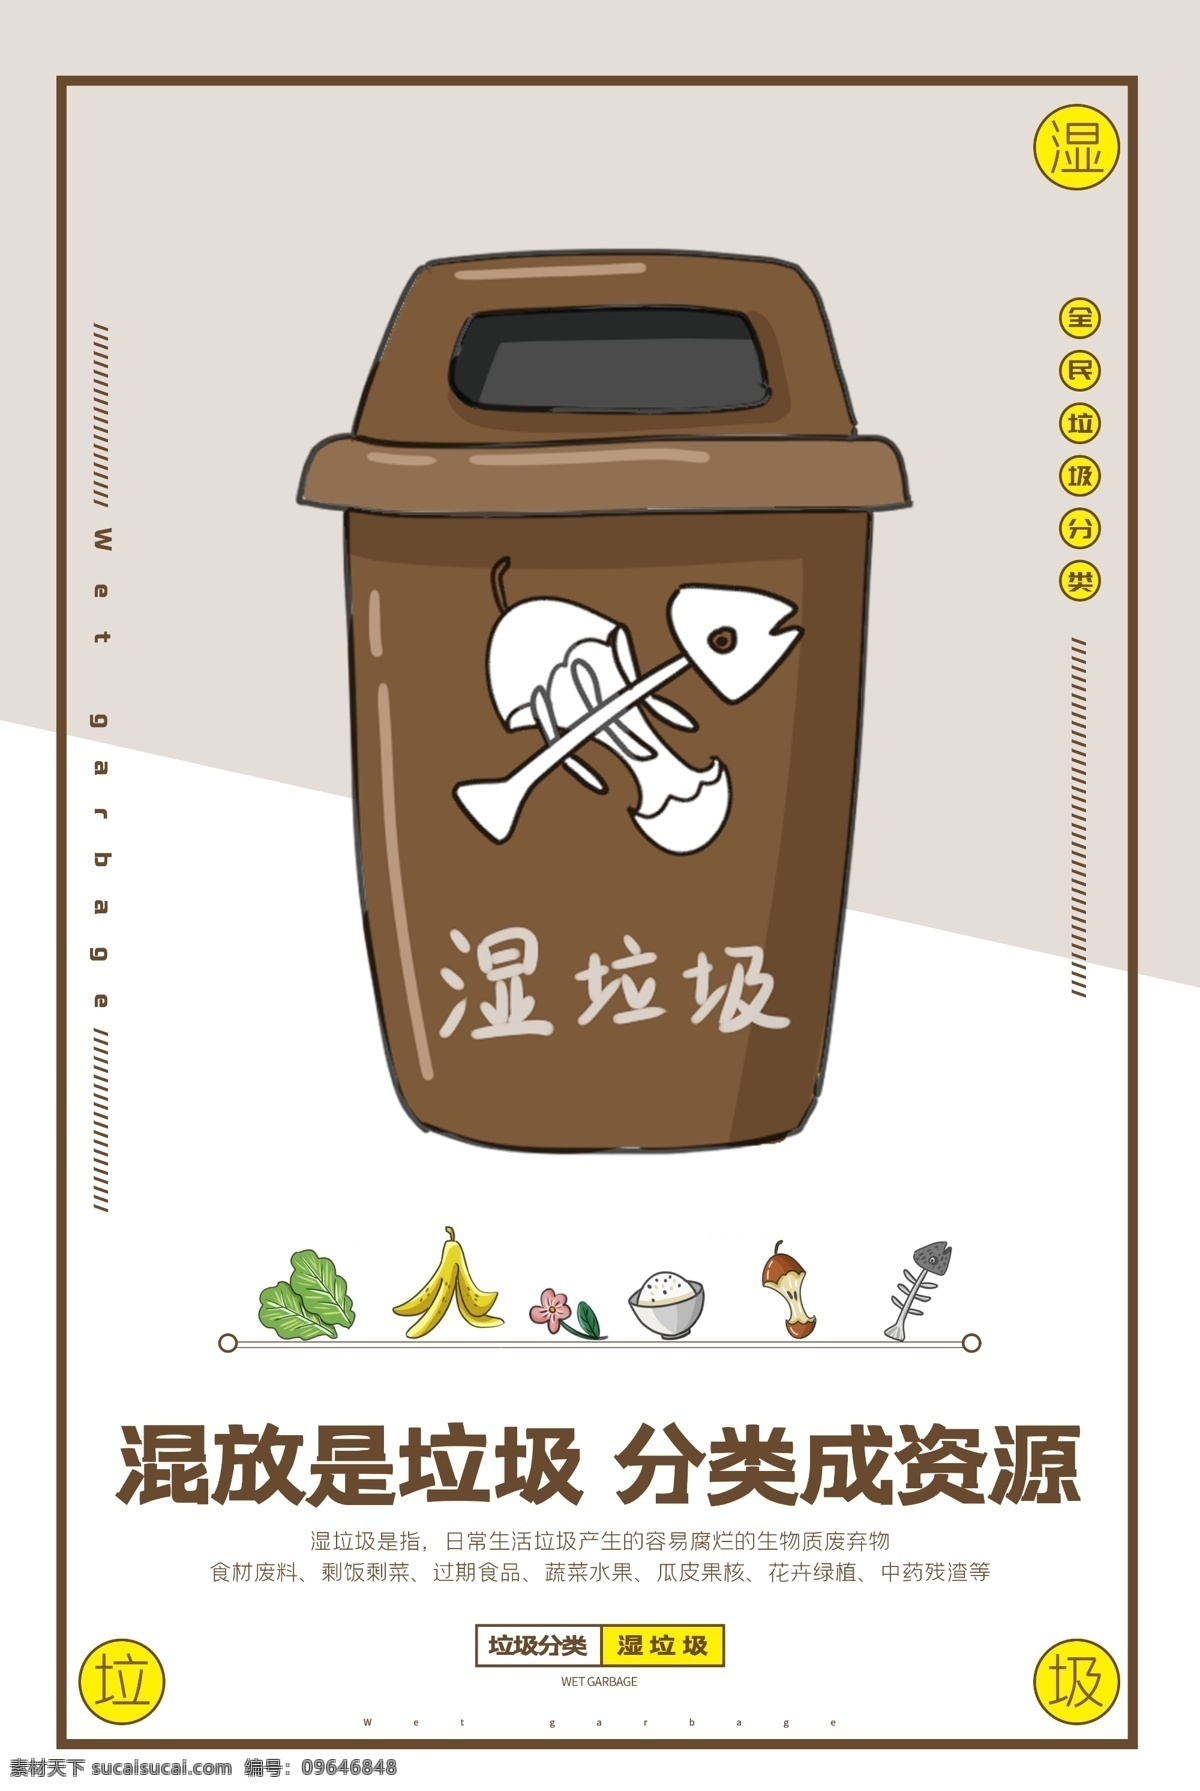 保护 环境 干 垃圾 湿 分类 海报 干垃圾 湿垃圾 废弃物 可回收 垃圾桶 厨房 果皮 保护环境 垃圾分类 权益 公益 类 分层